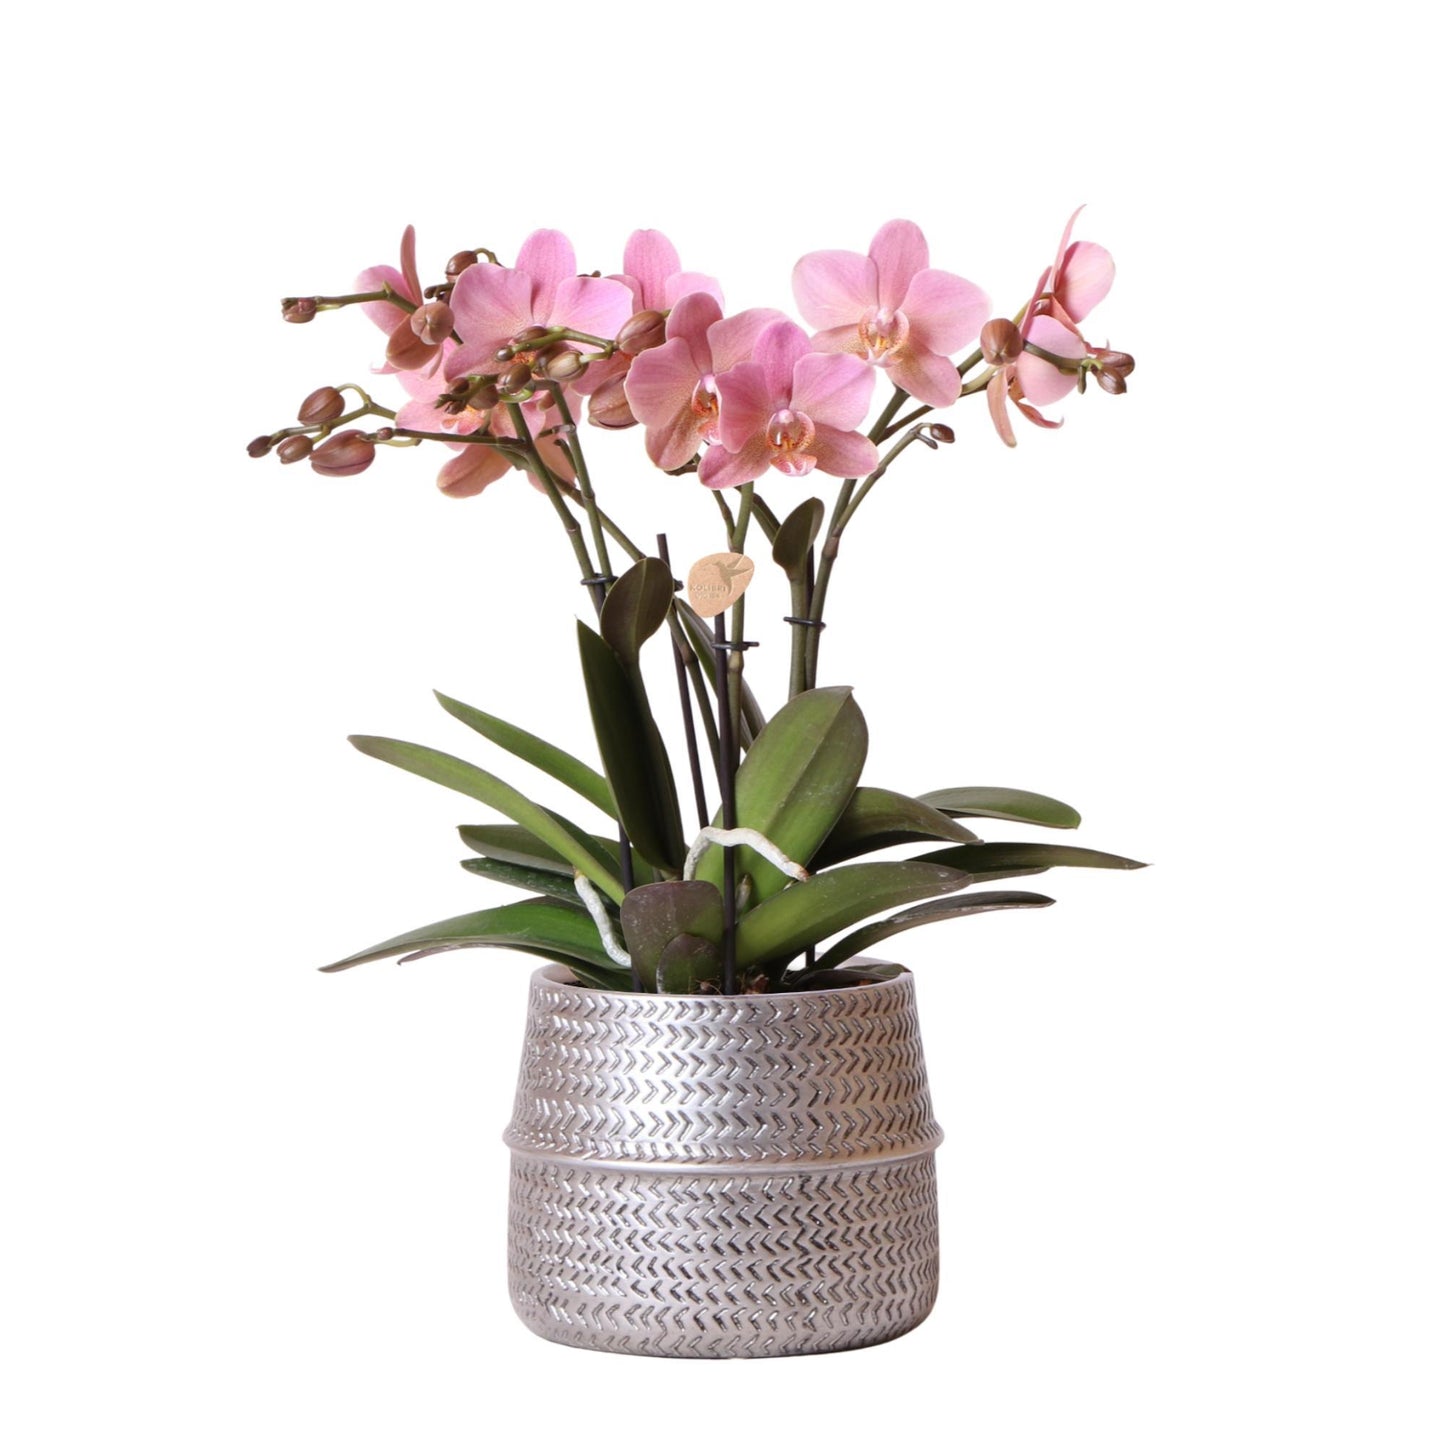 Kolibri Orchids | Roze Phalaenopsis orchidee – Treviso in Groove pot zilver – potmaat Ø12cm – 35cm hoog | bloeiende kamerplant in bloempot - vers van de kweker